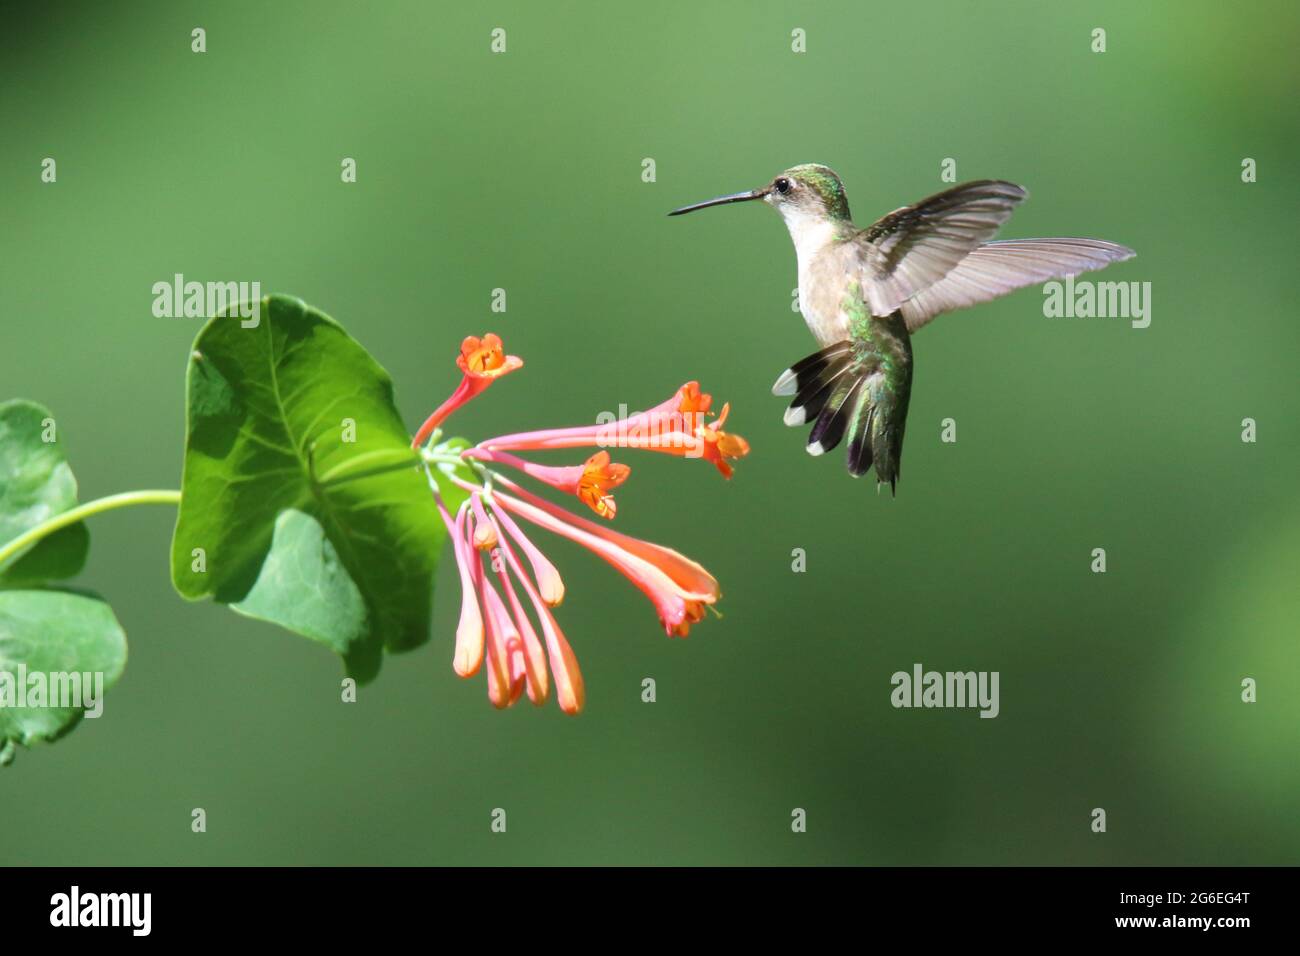 Humingbird de garganta rubí visitando flores de madreselva para alimentarse del néctar. Los pájaros defenderán un parche de flores de otros colibríes. Foto de stock